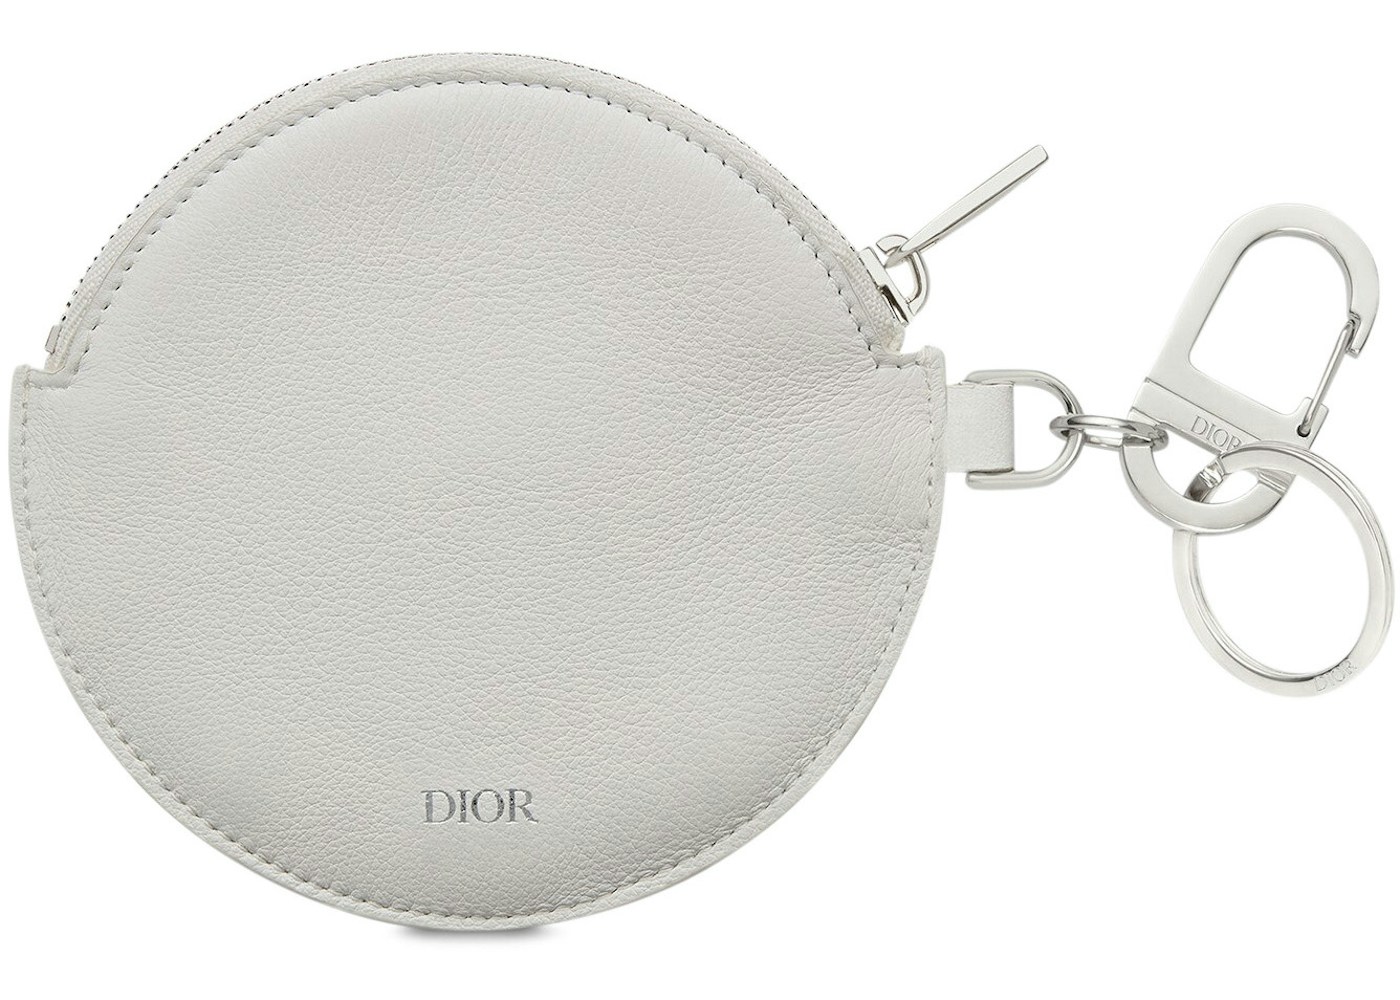 Dior x Daniel Arsham Zip Charm Calfskin White in Smooth Calfskin with